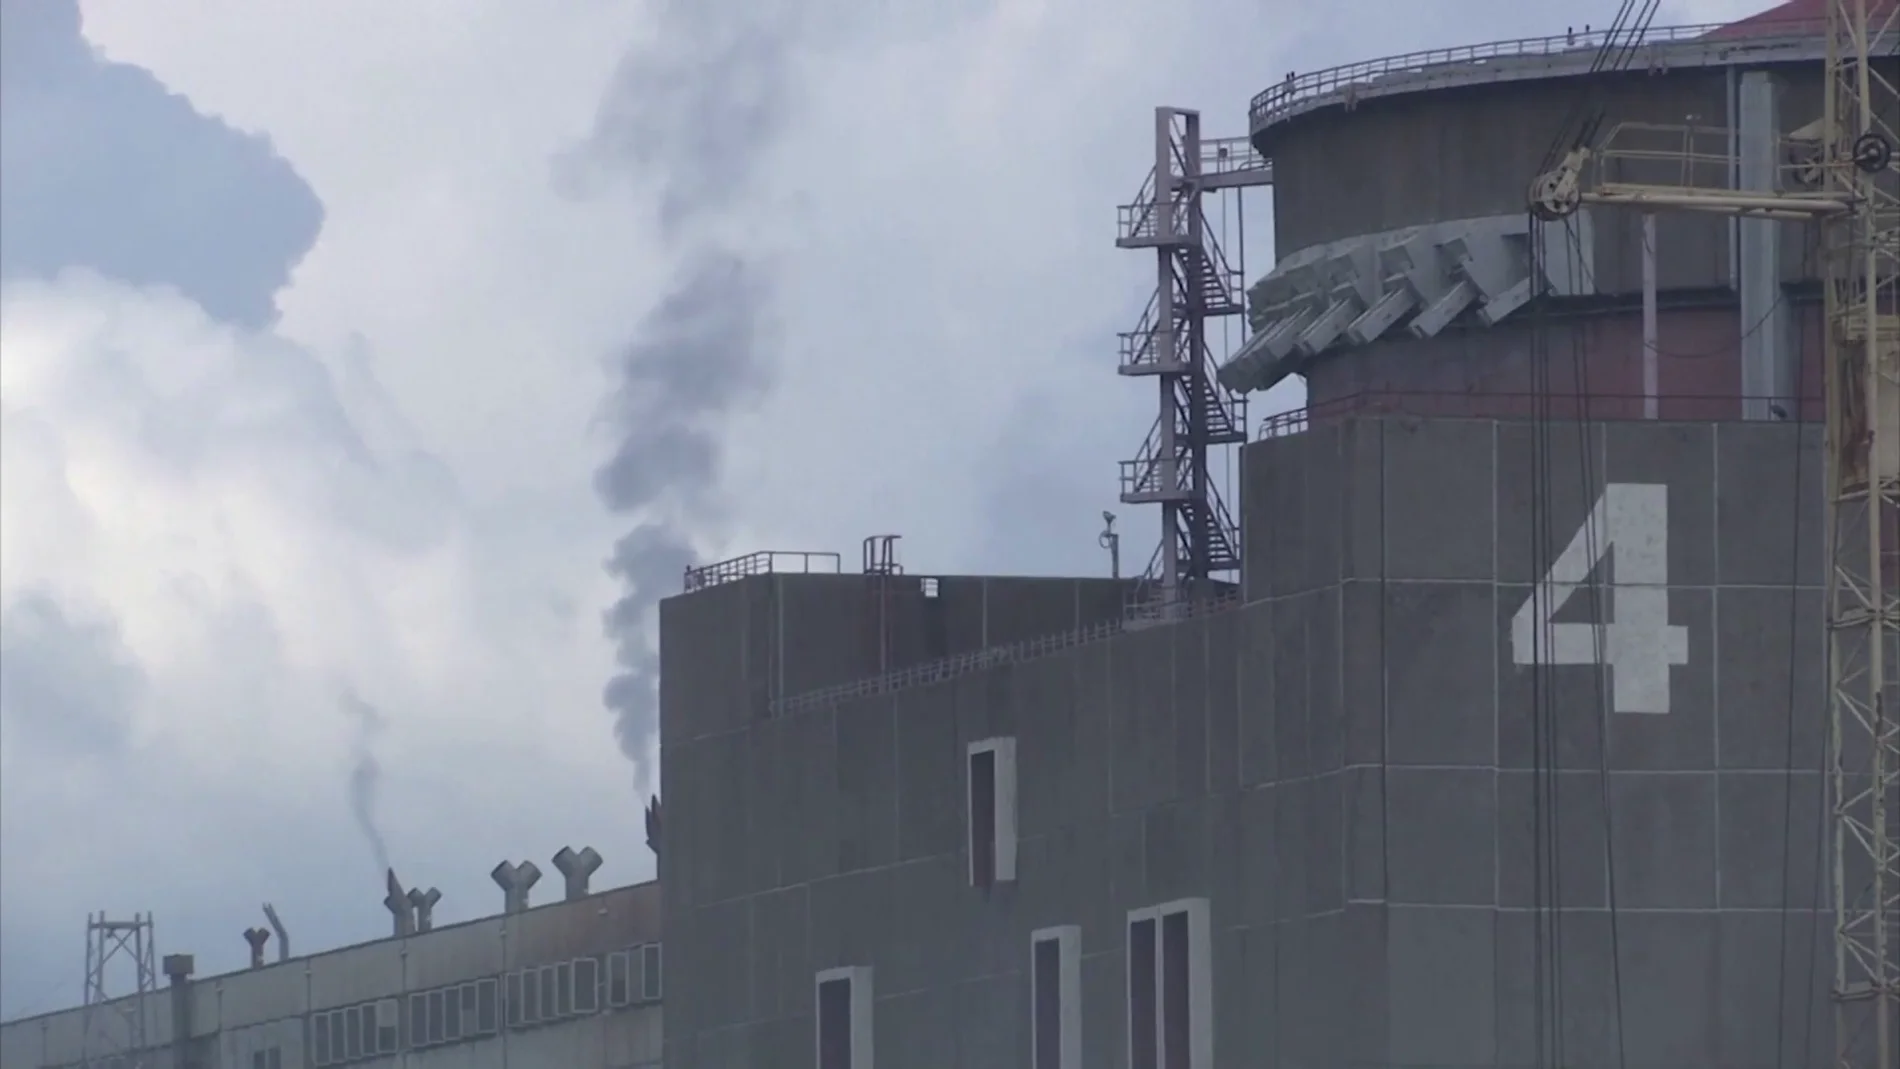 La central nuclear de Zaporiyia, la mayor central nuclear de Europa